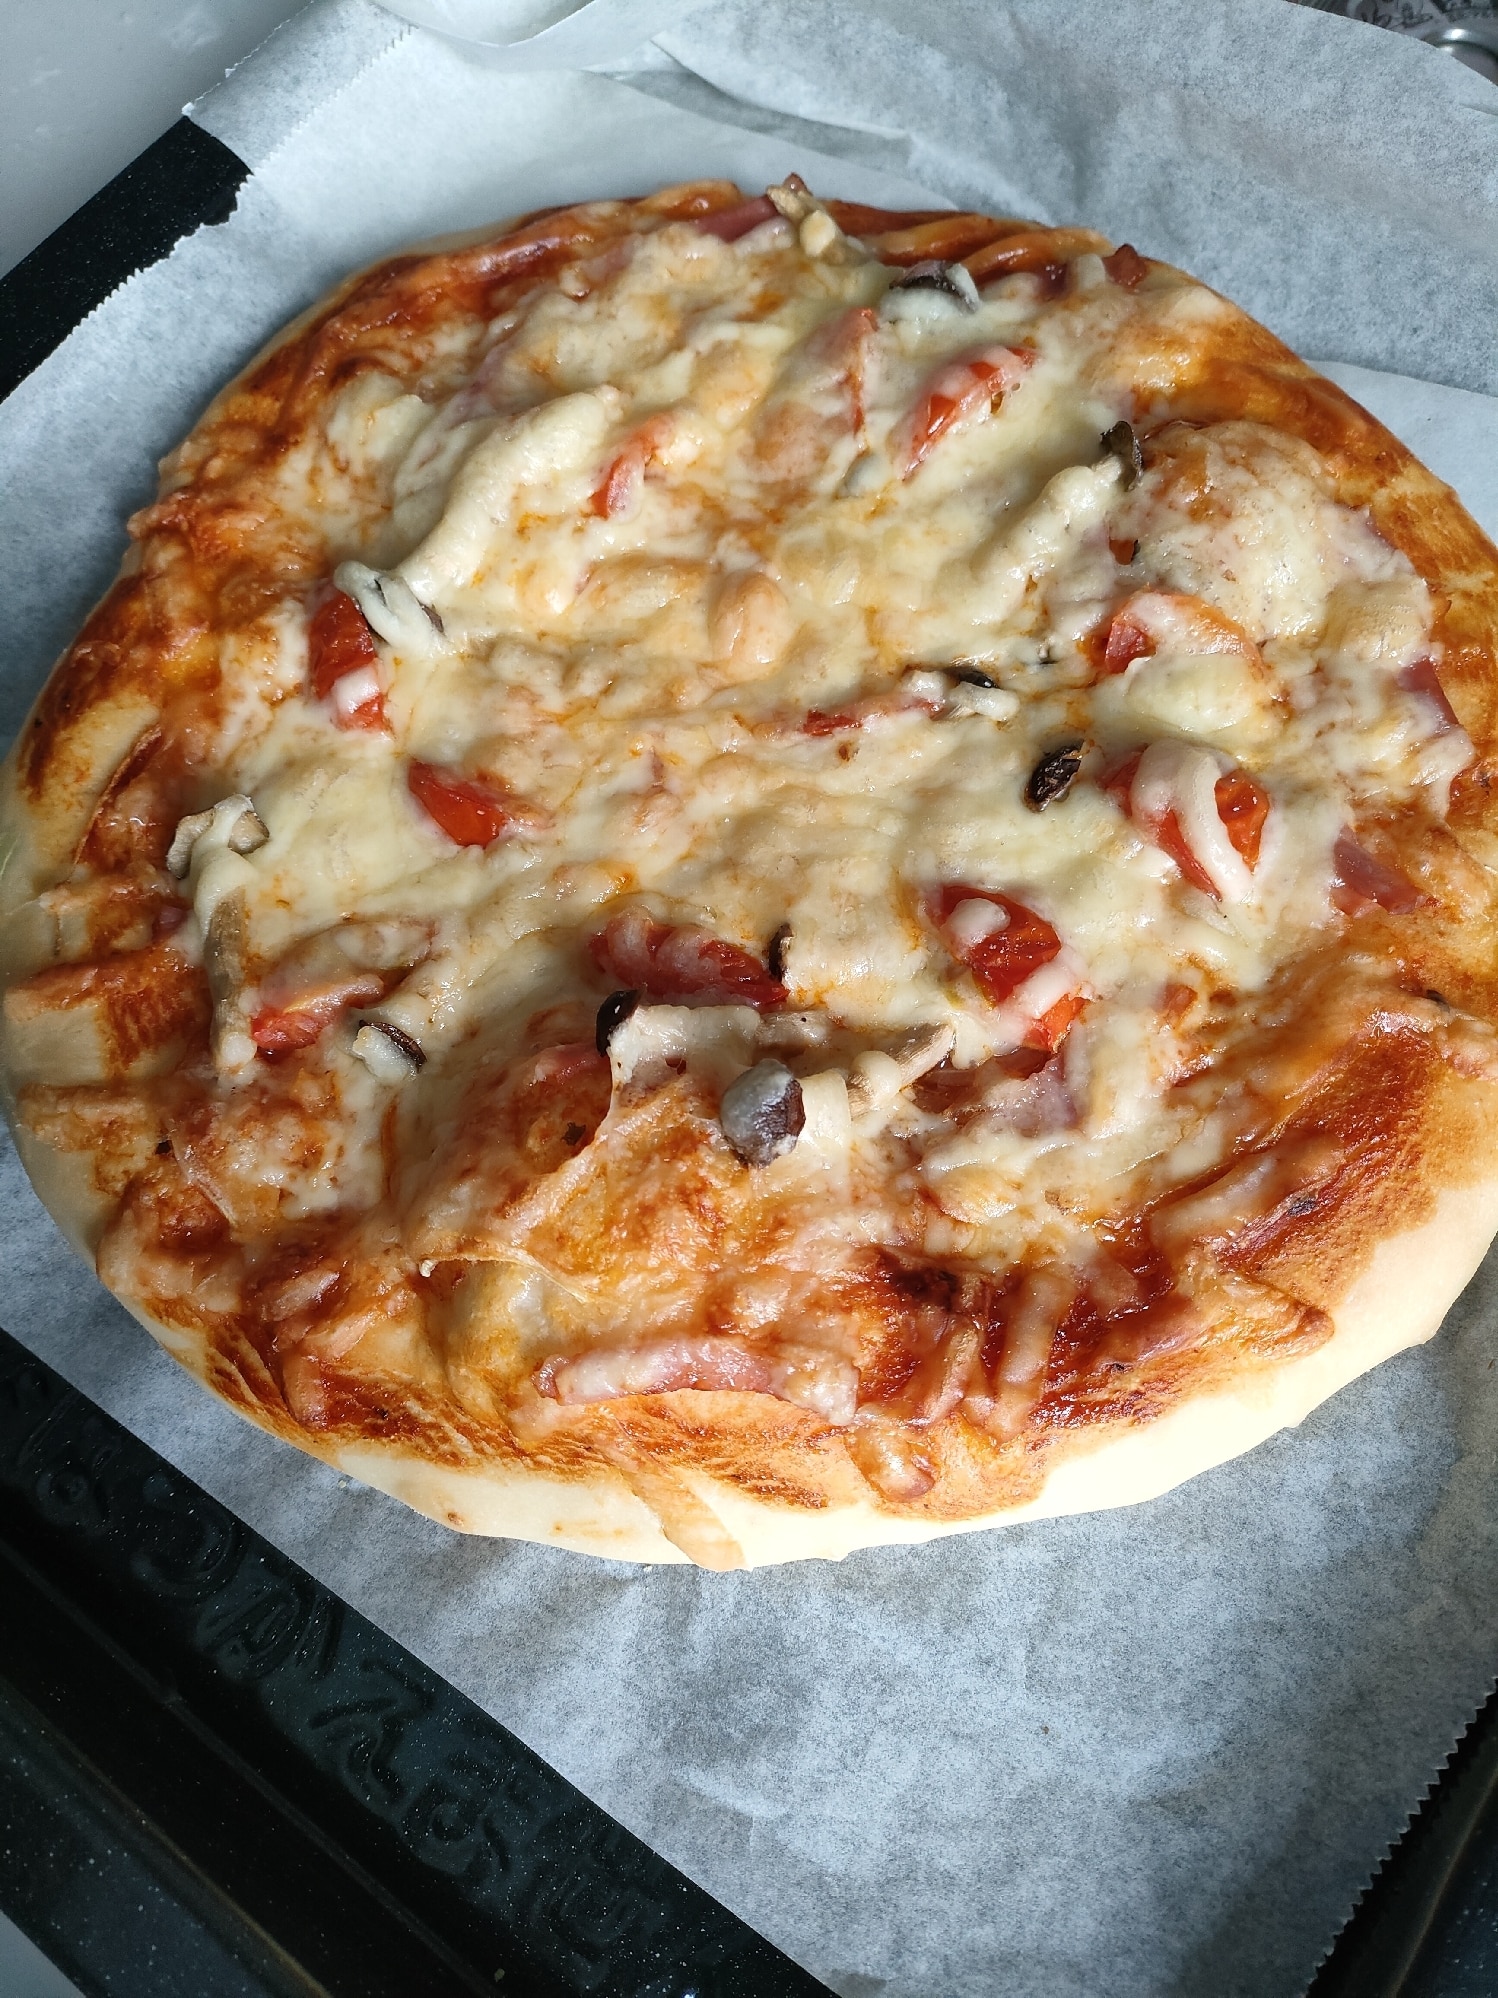 521円 おトク ピザ生地 トマトソース チーズが入った手作りピザキット 誰でも簡単に 生地から伸ばして 楽しく 美味しいピザがつくれます Mサイズ 23cm